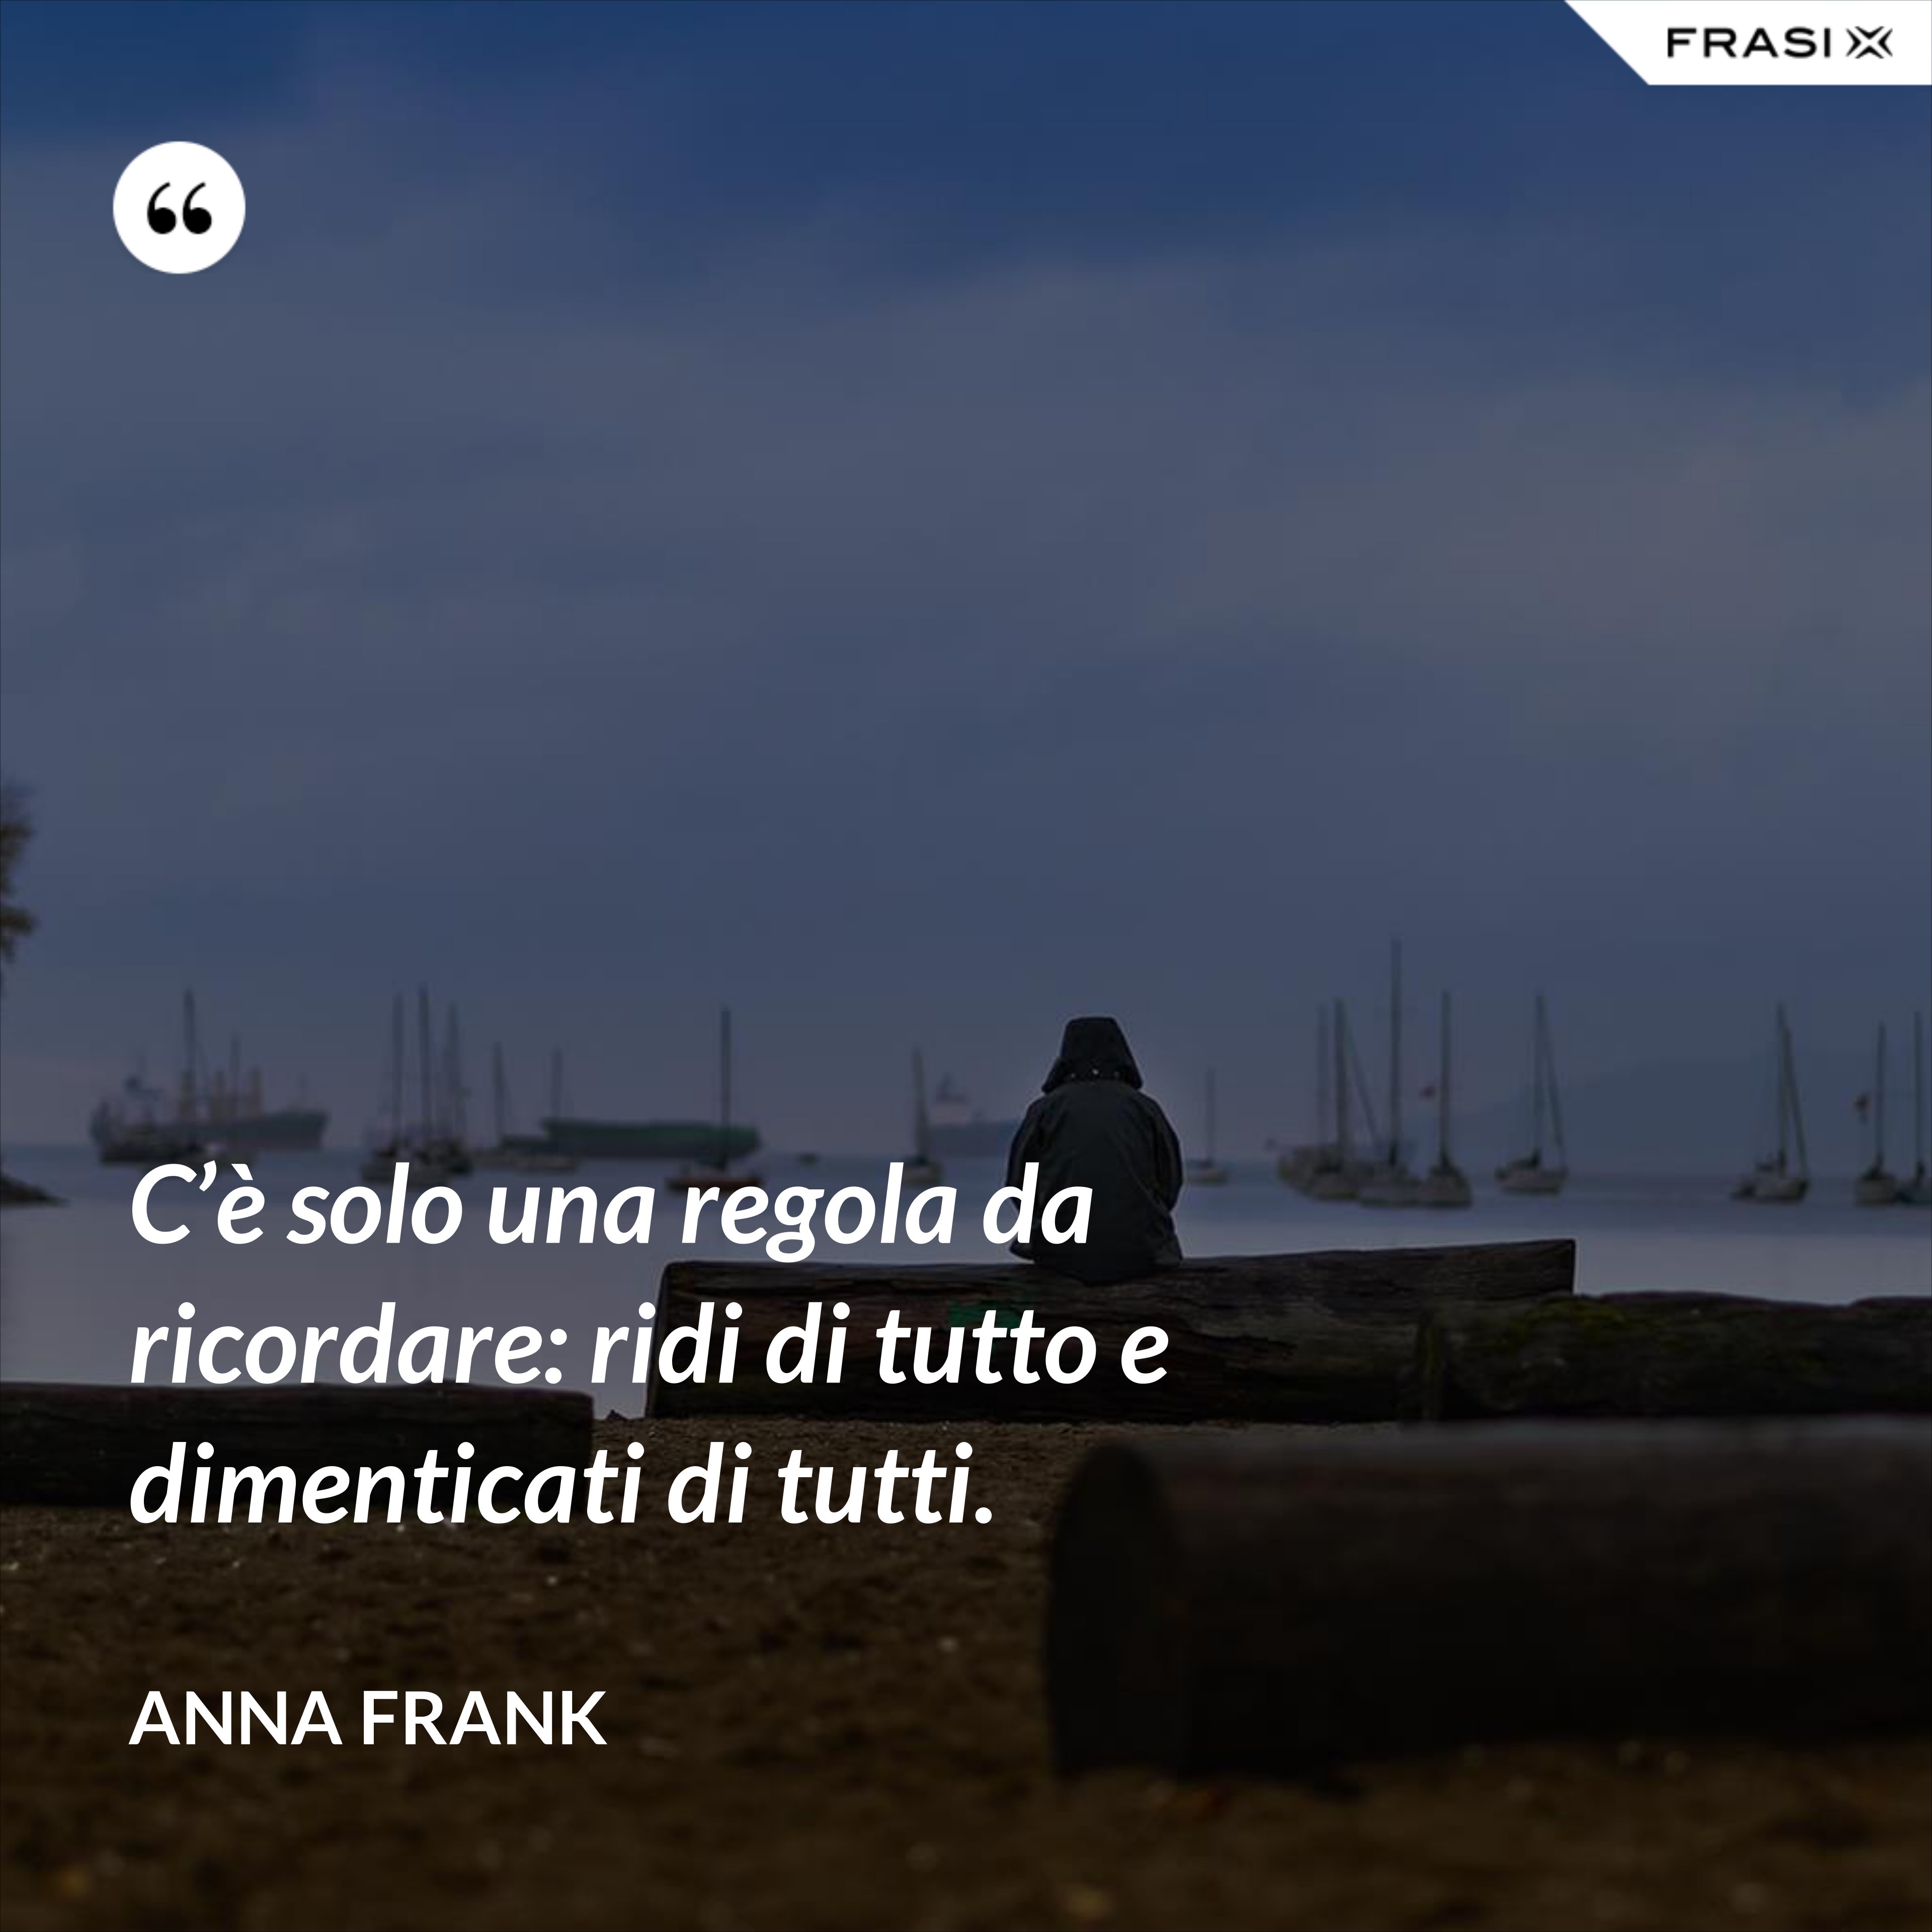 C’è solo una regola da ricordare: ridi di tutto e dimenticati di tutti. - Anna Frank